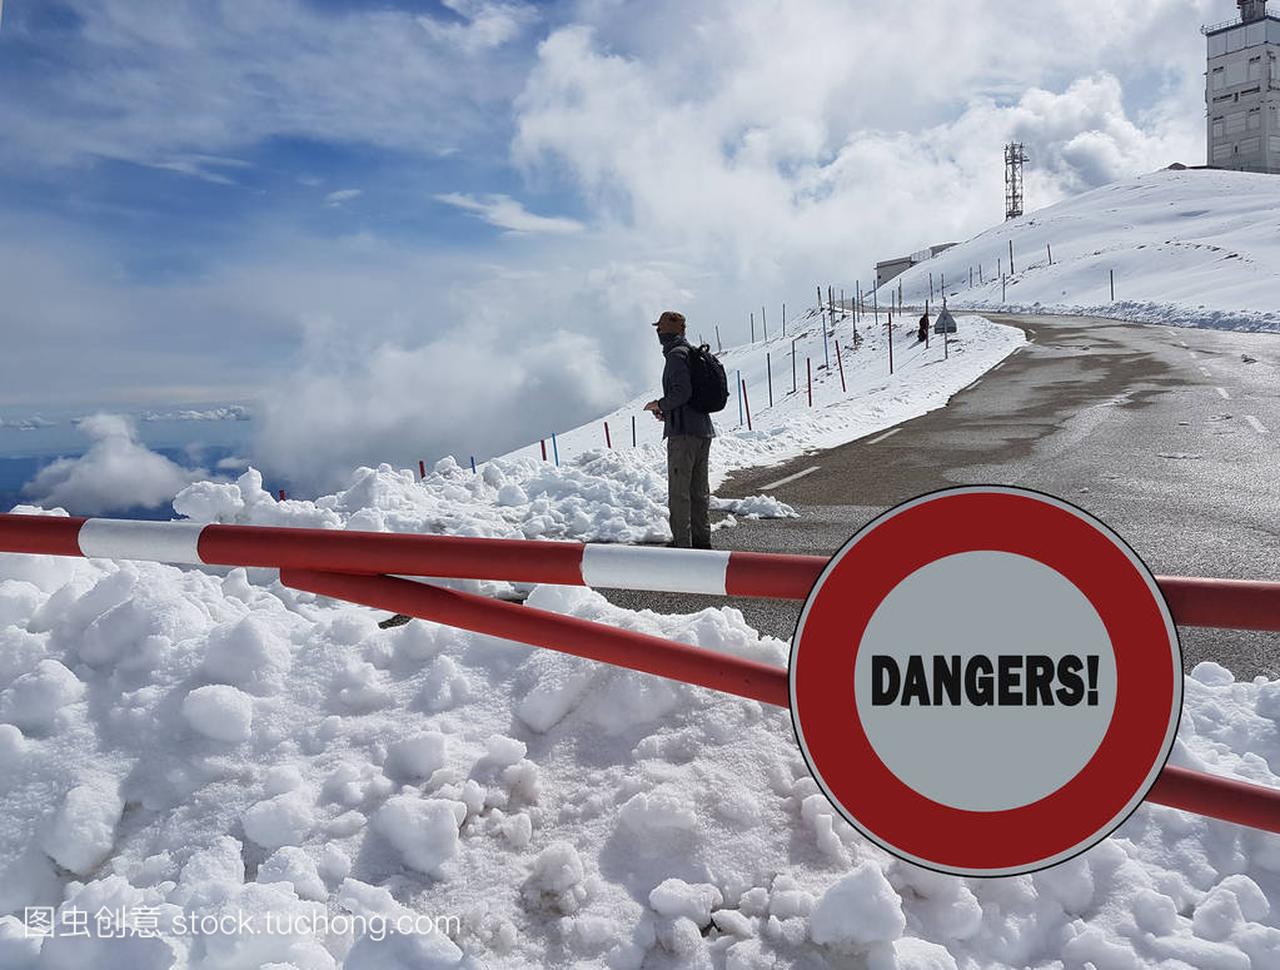 路标停止。在山上的危险警告。雪崩撤退。在积